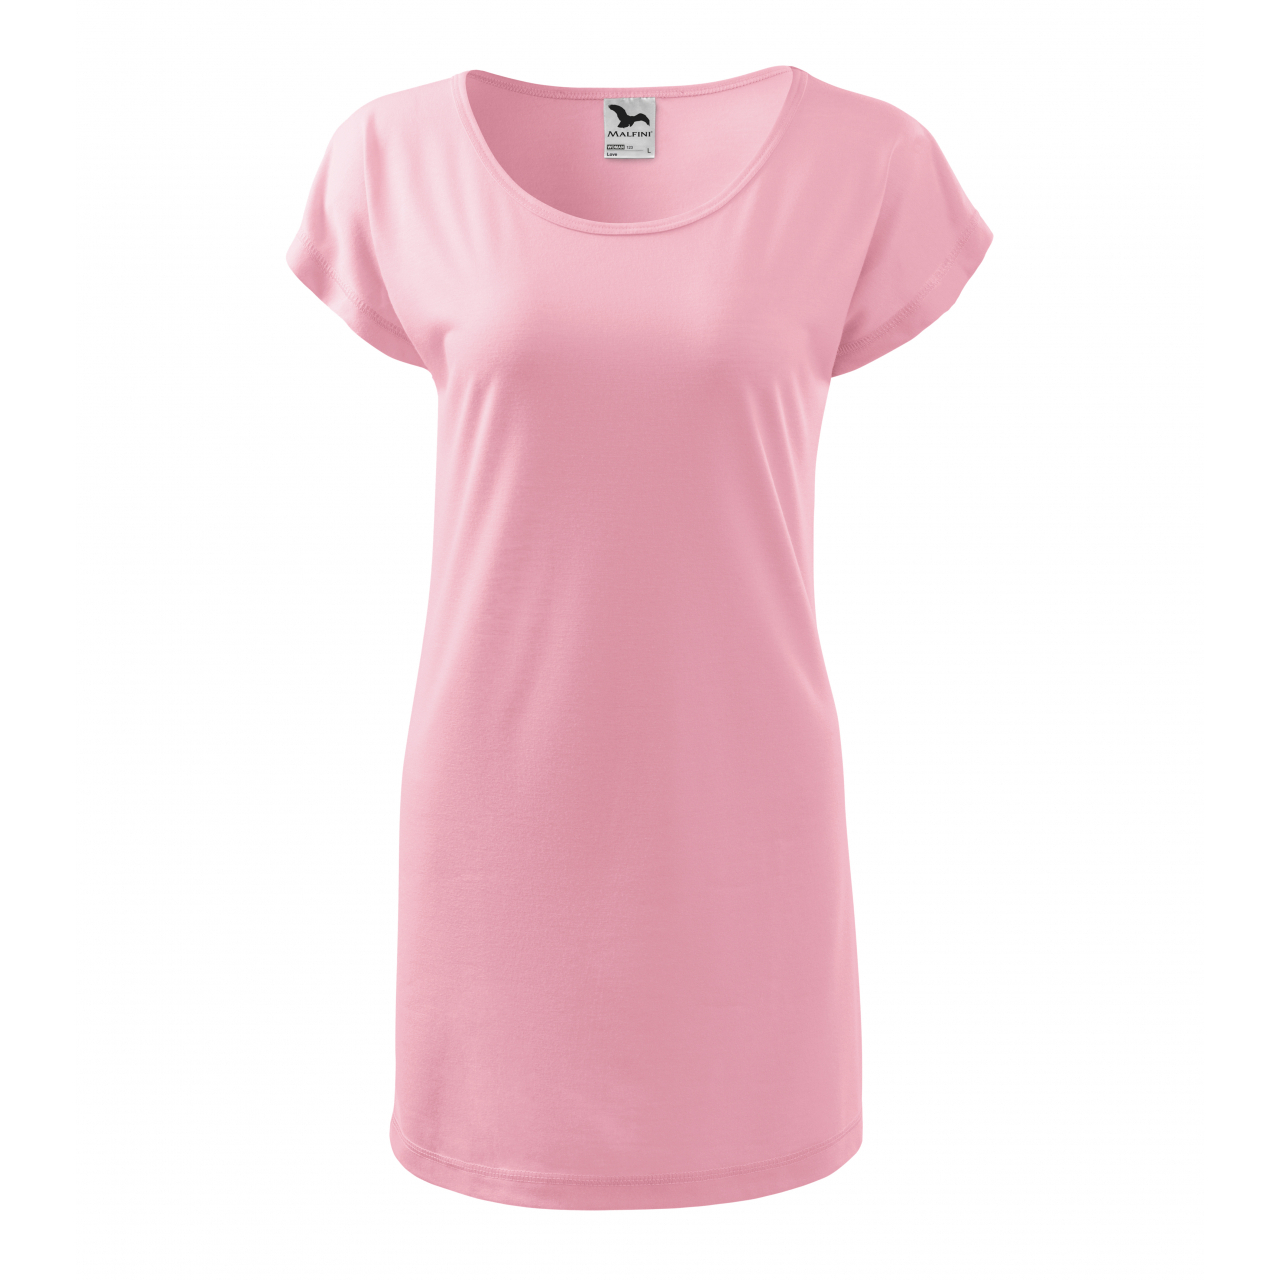 Šaty Malfini Love - světle růžové, XXL